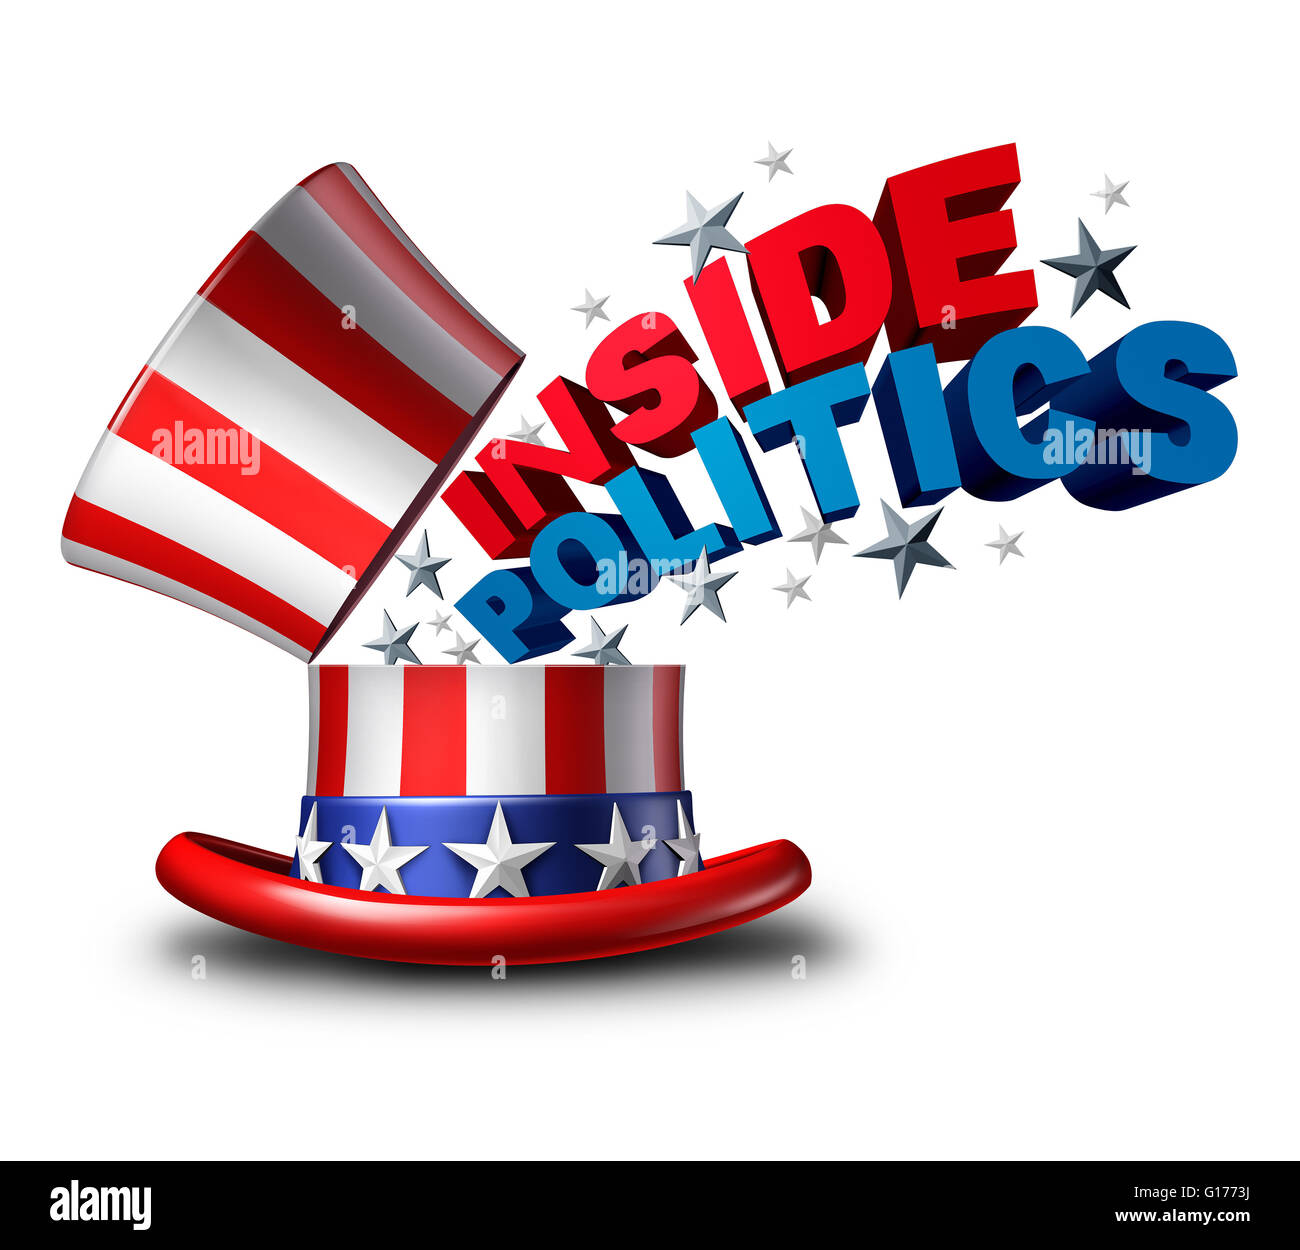 All'interno della politica elettorale americana e gli Stati Uniti d'America vota simbolo come un politico USA news insider giornalismo come simbolo Foto Stock